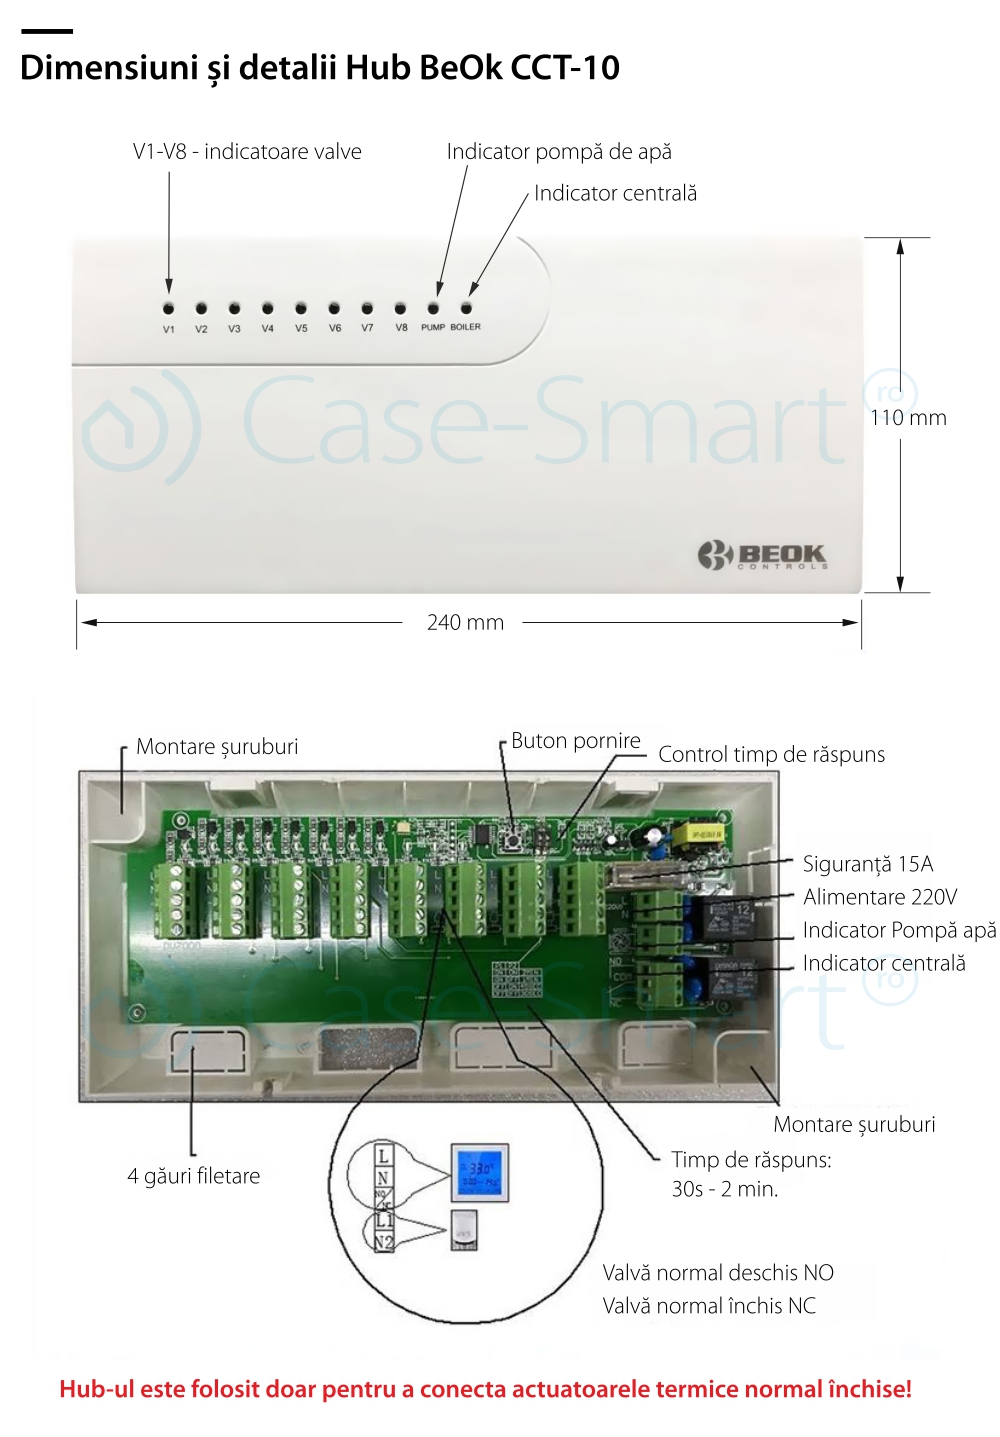 Hub control dispozitive actuatoare – Beok CCT-10